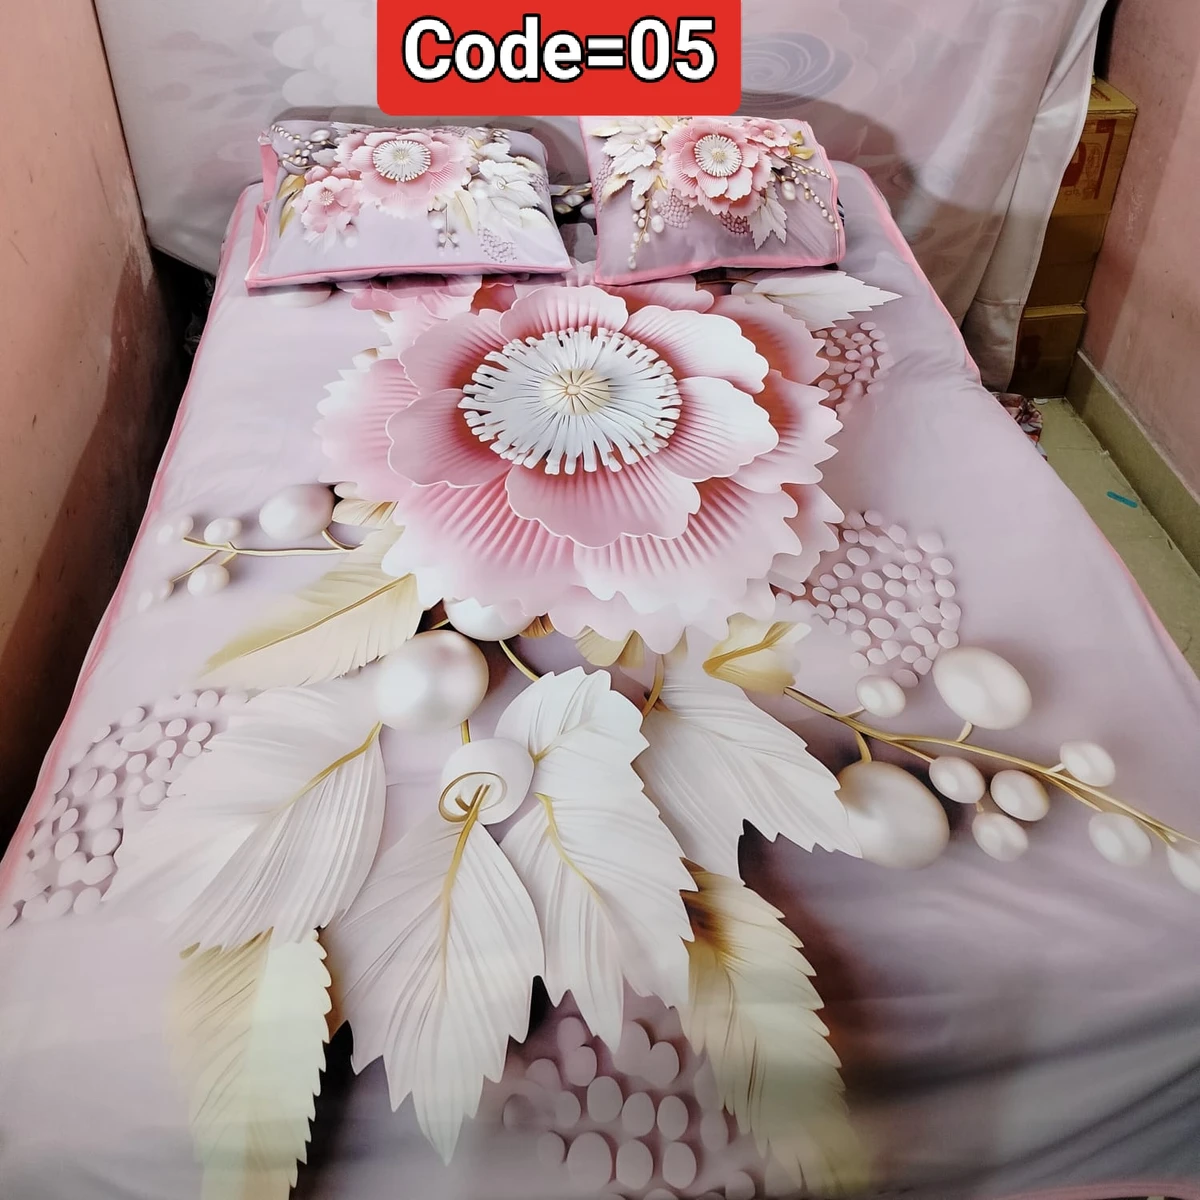 3D Pint Bed Sheet .Coller Code= 05